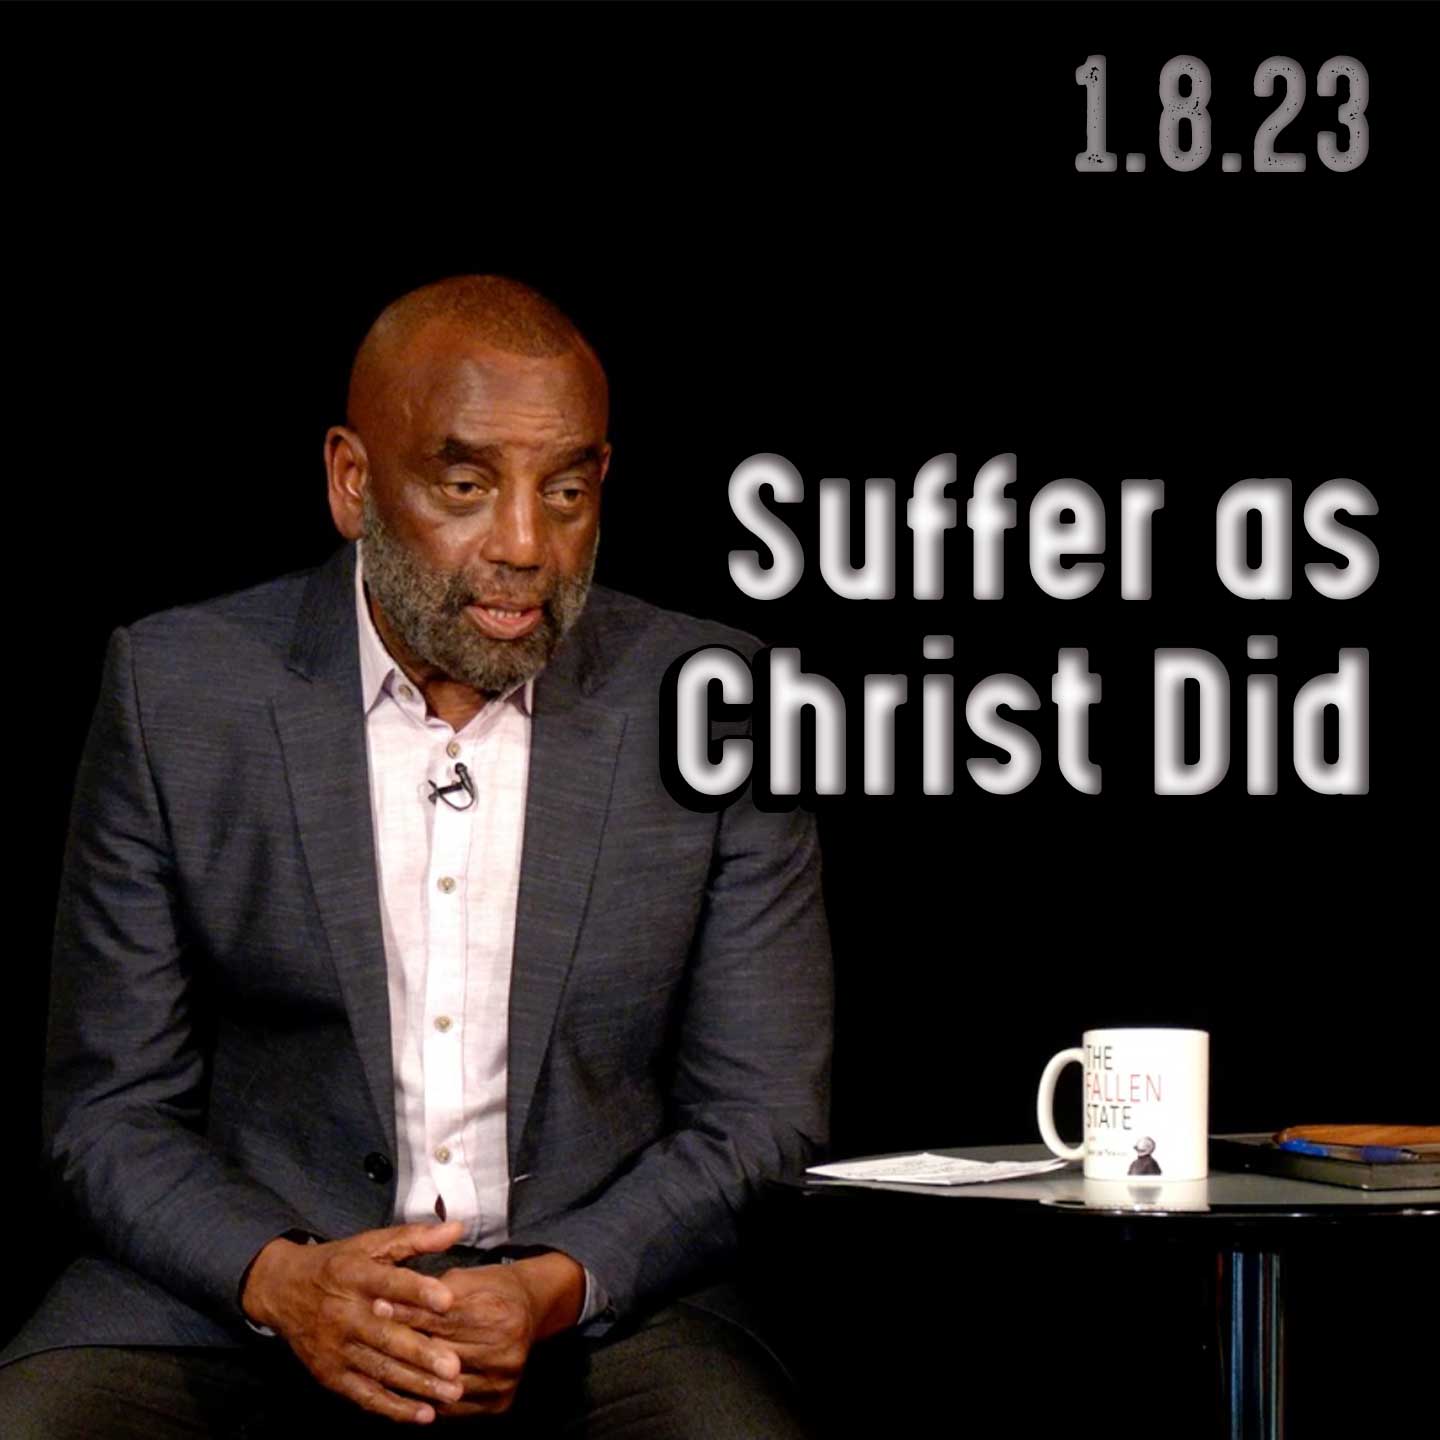 Suffer as Christ did: Church 1/8/23